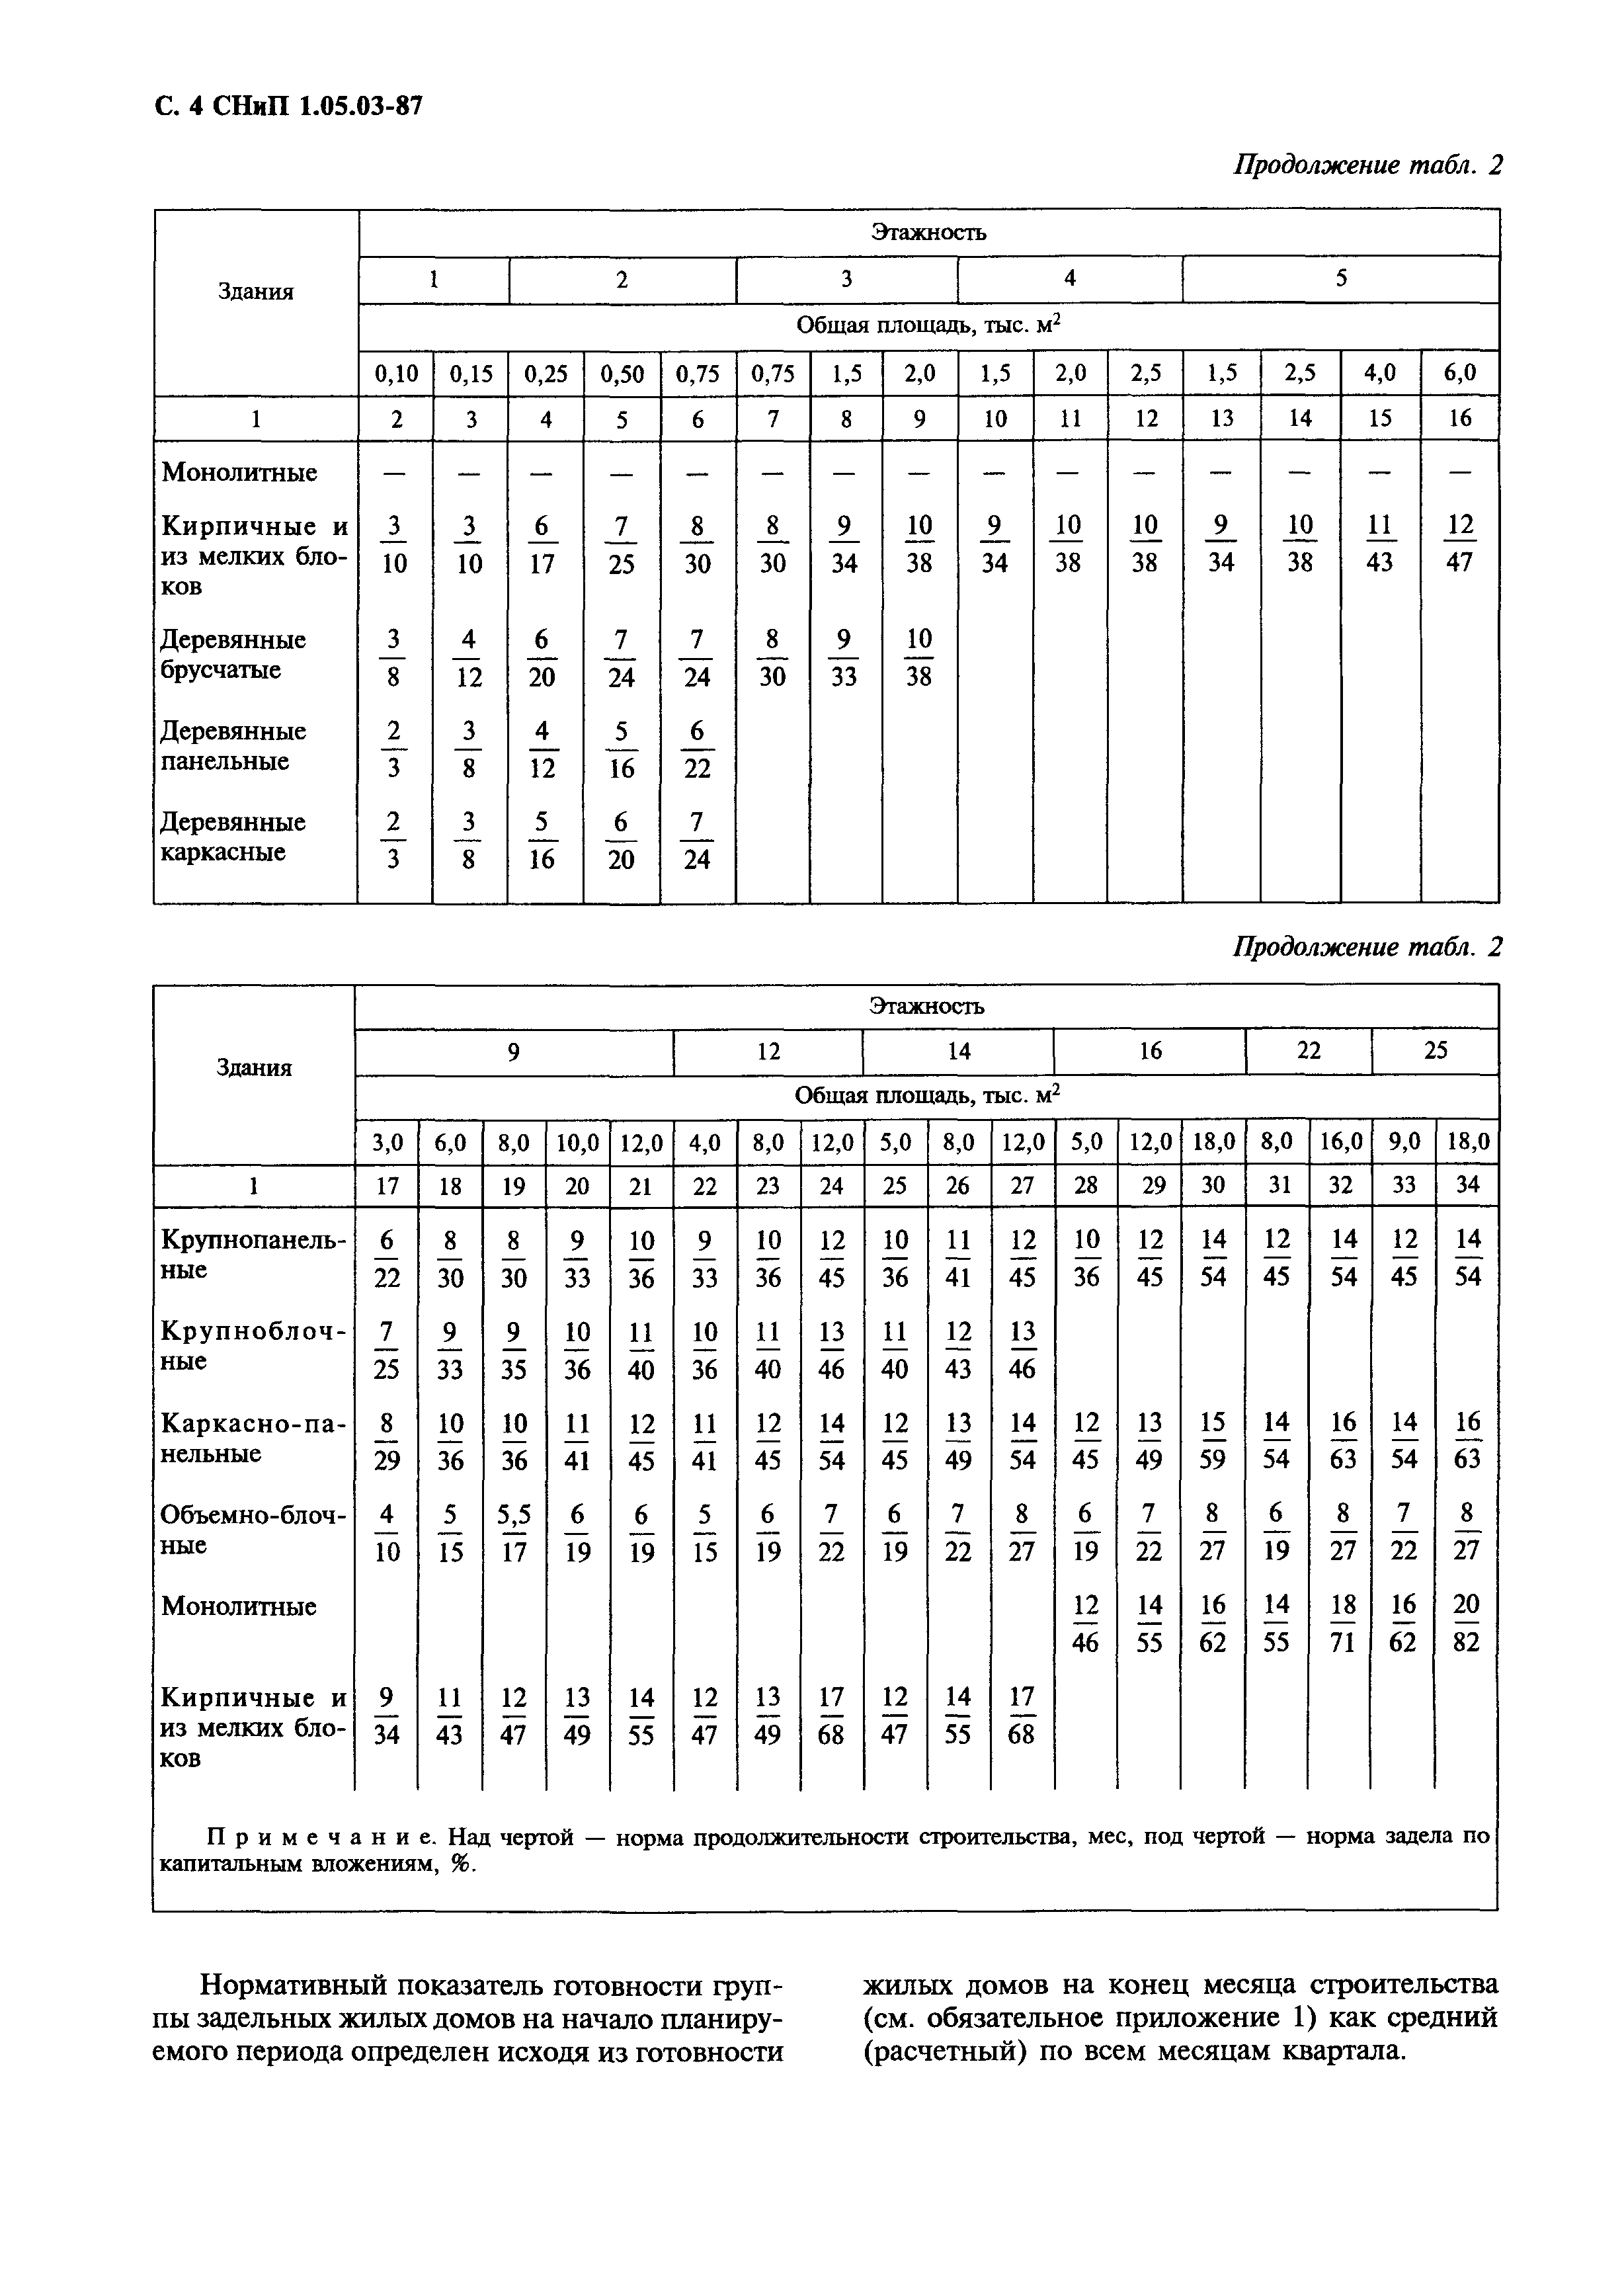 СНиП 1.05.03-87